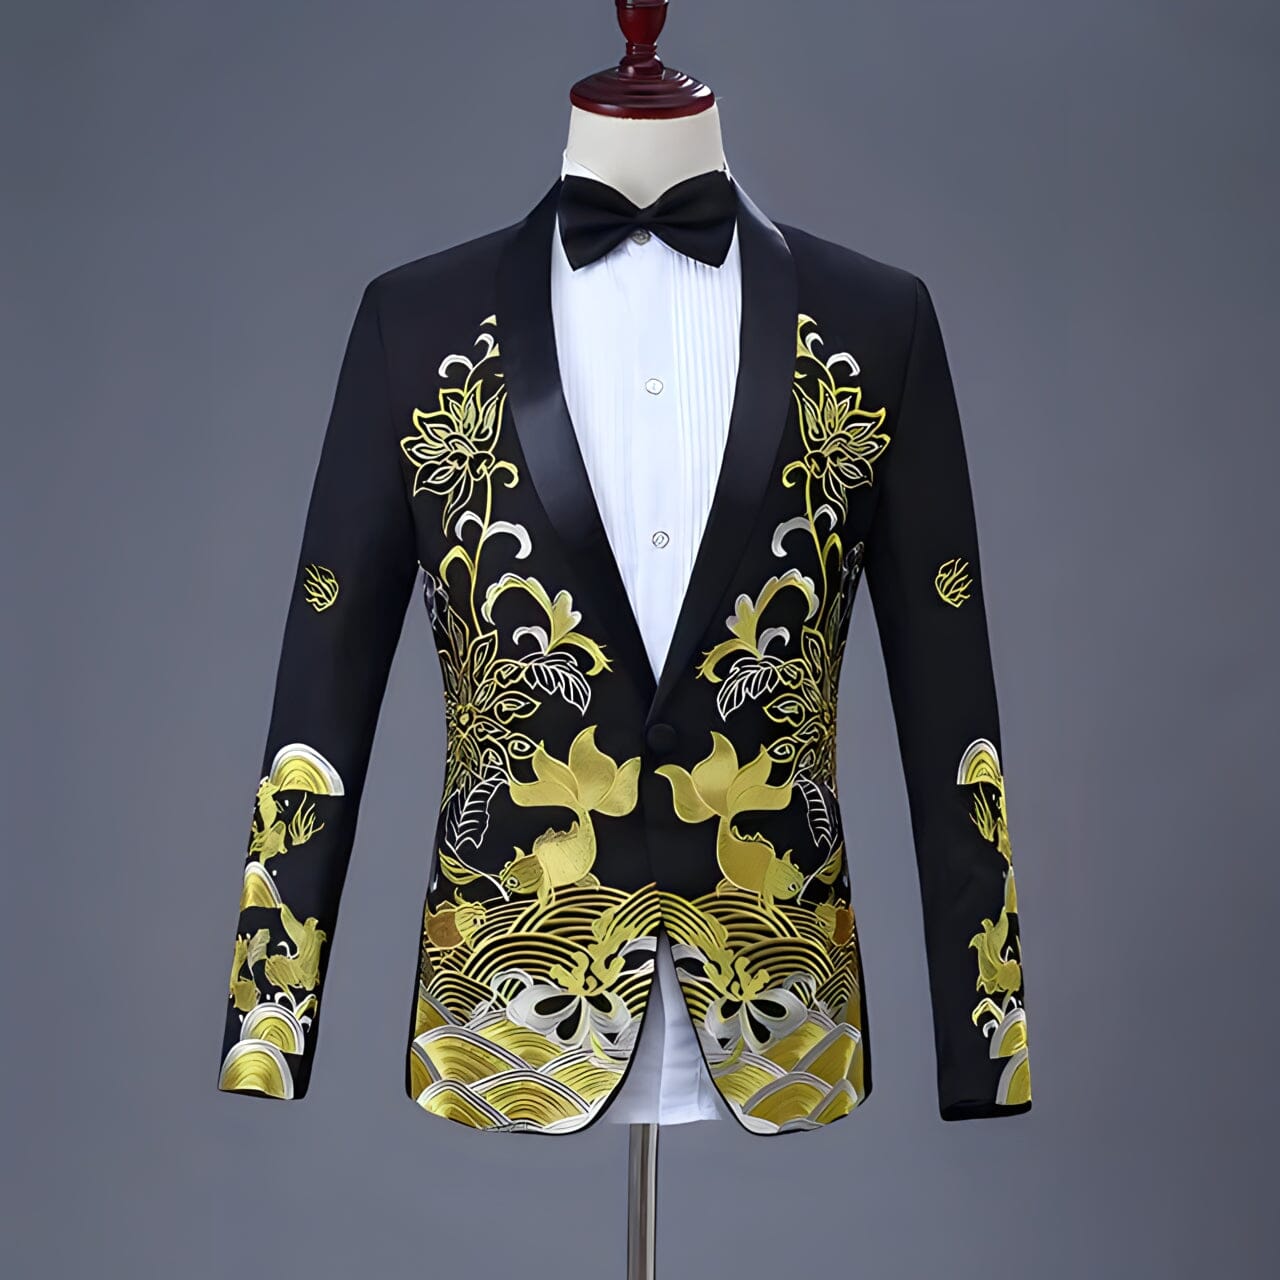 The Monticello Slim Fit Blazer Suit Jacket - Multiple Colors Shop5798684 Store Black S 